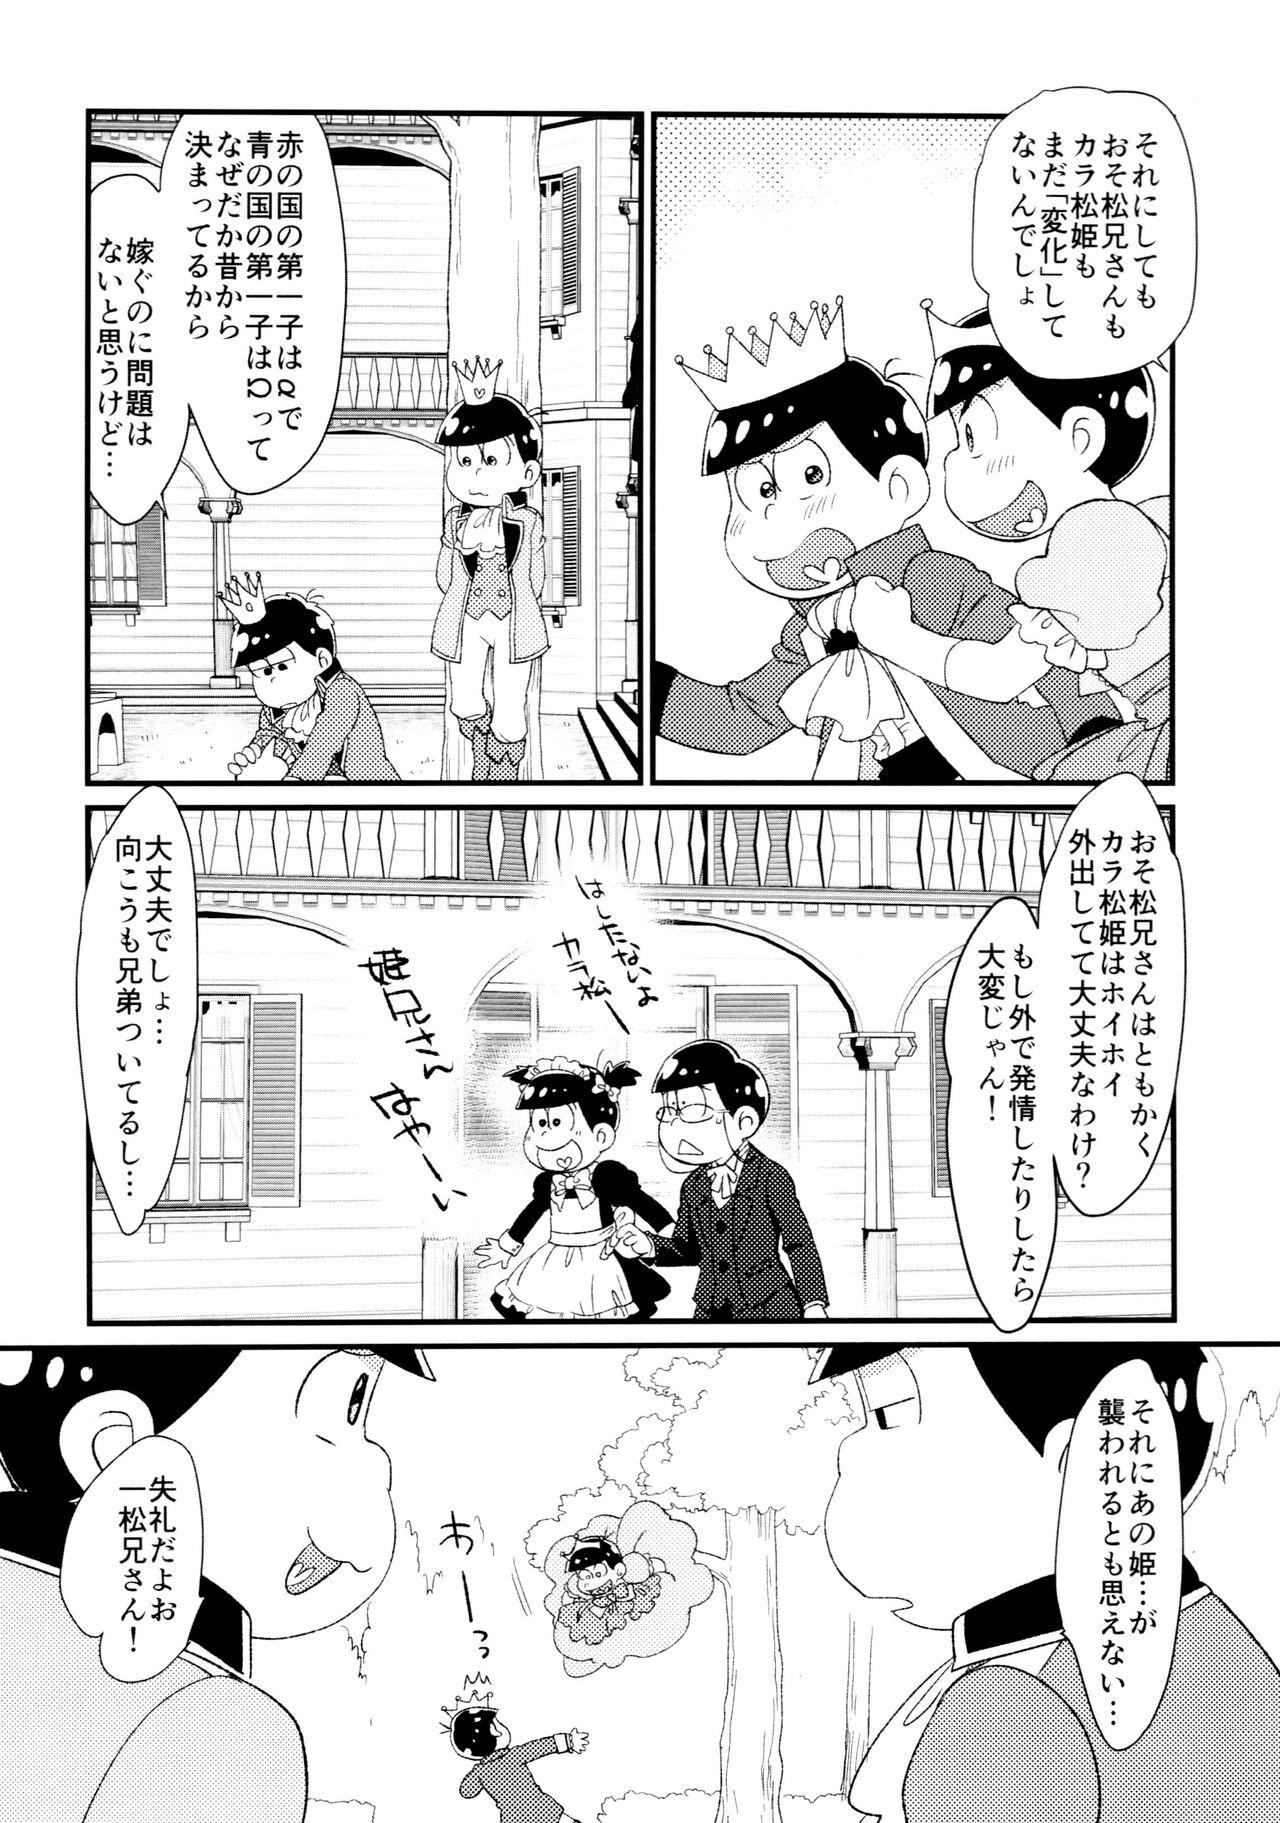 Amateur Sex Anata wa watashinounmei no hito - Osomatsu san Sesso - Page 7